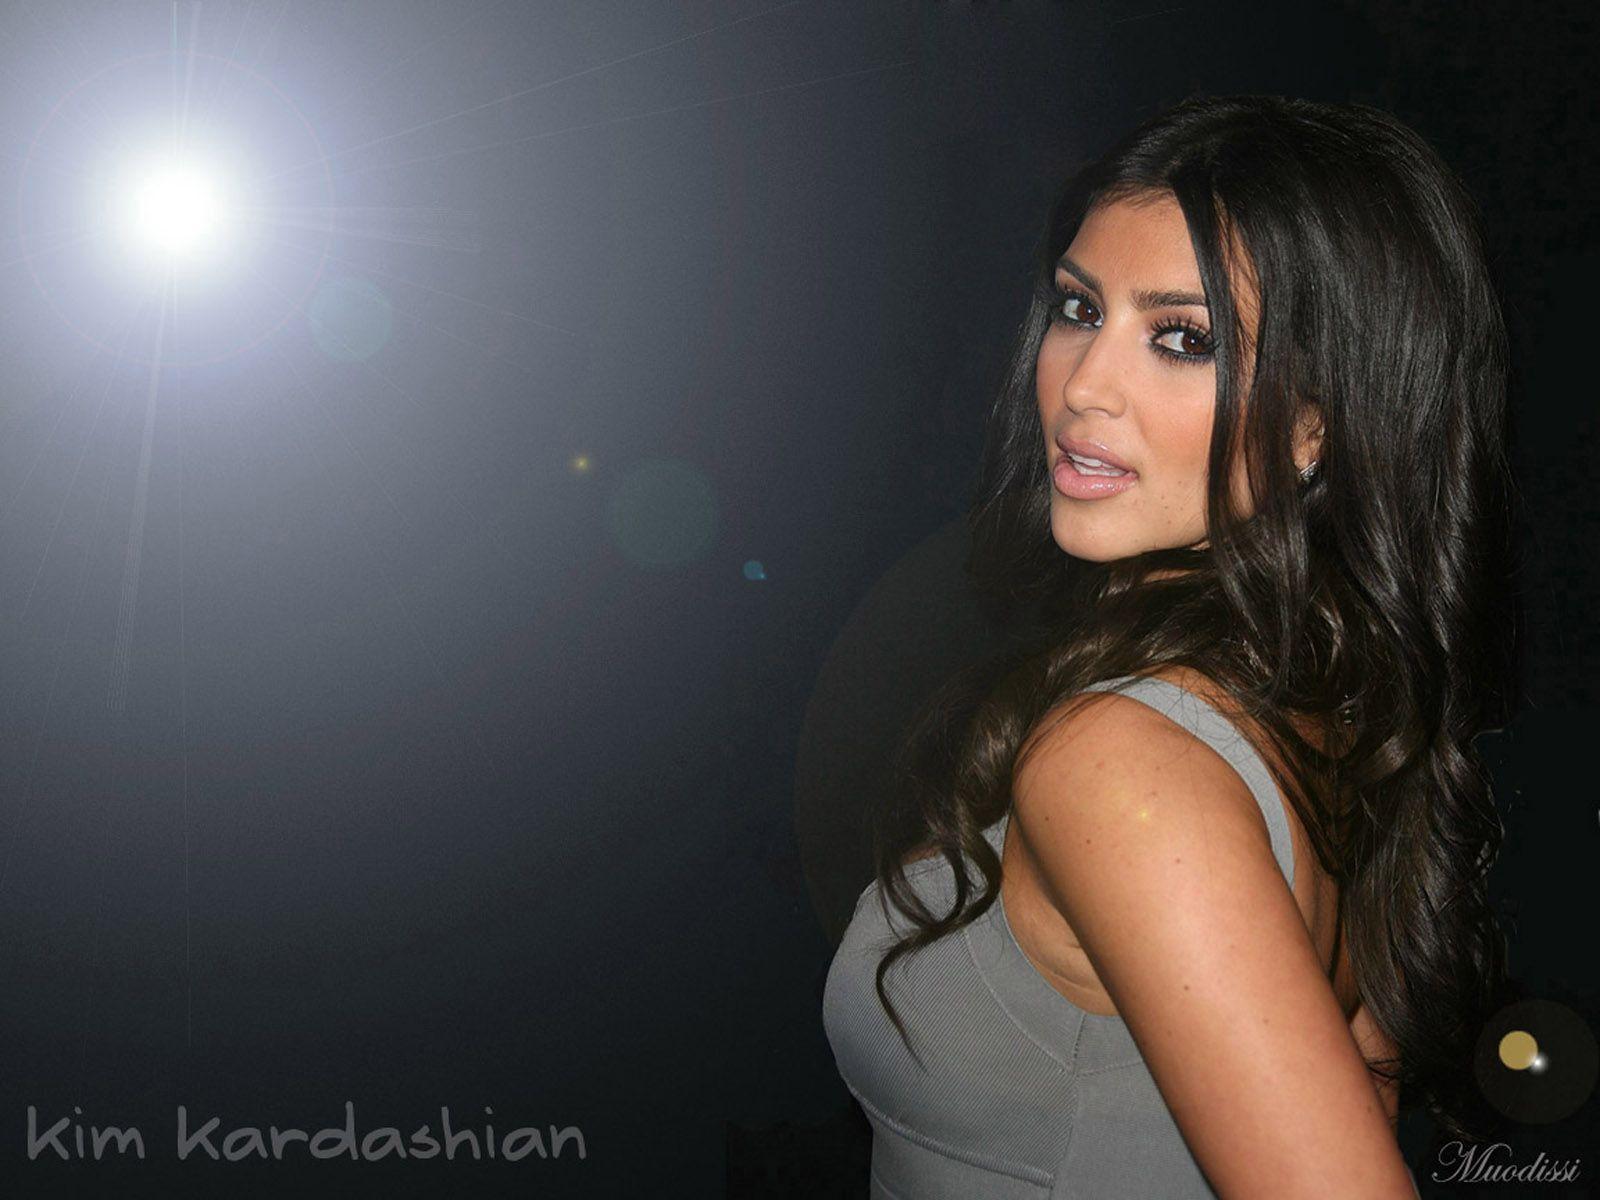 Kim Kardashian Wallpaper. hdwallpaper